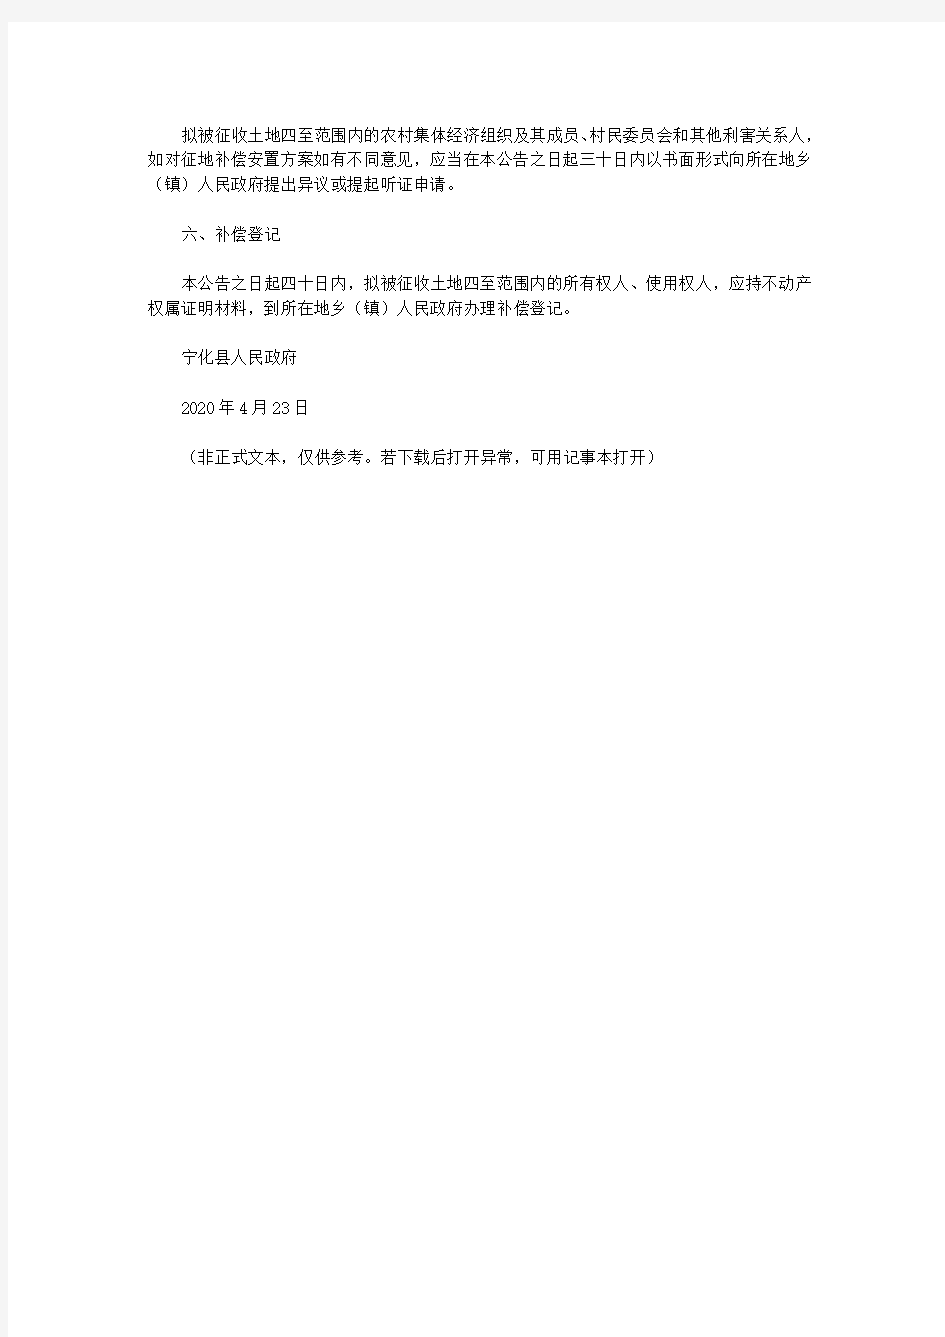 宁化县人民政府关于江背A地块(广济小区)建设用地项目拟征地补偿安置方案的公告